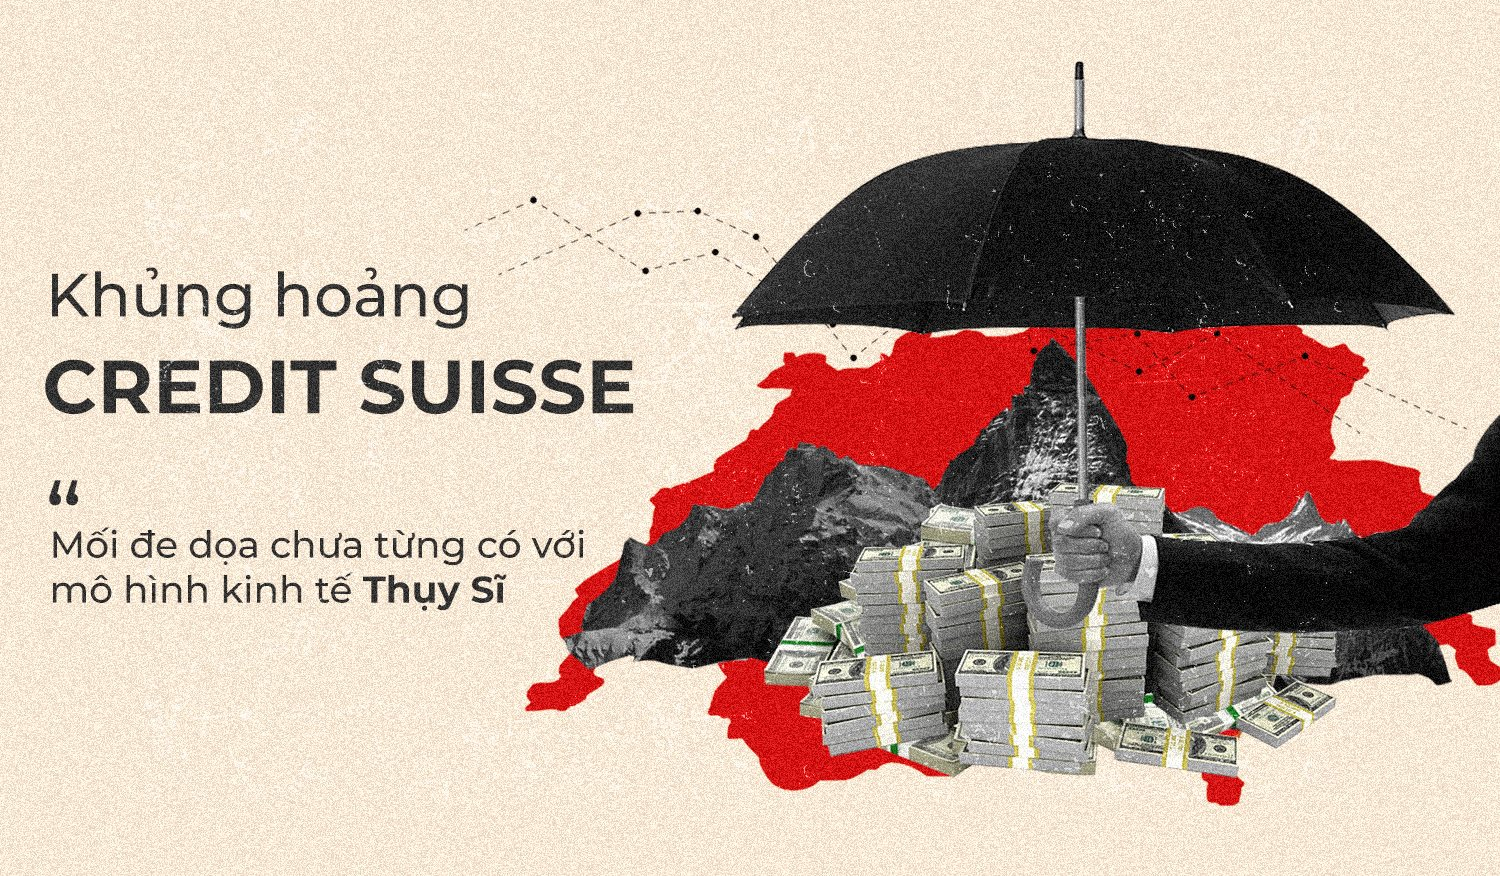 Khủng hoảng với Credit Suisse hé lộ những vấn đề với mô hình kinh tế “bảo vệ tài sản giới siêu giàu” của Thụy Sĩ - Ảnh 1.